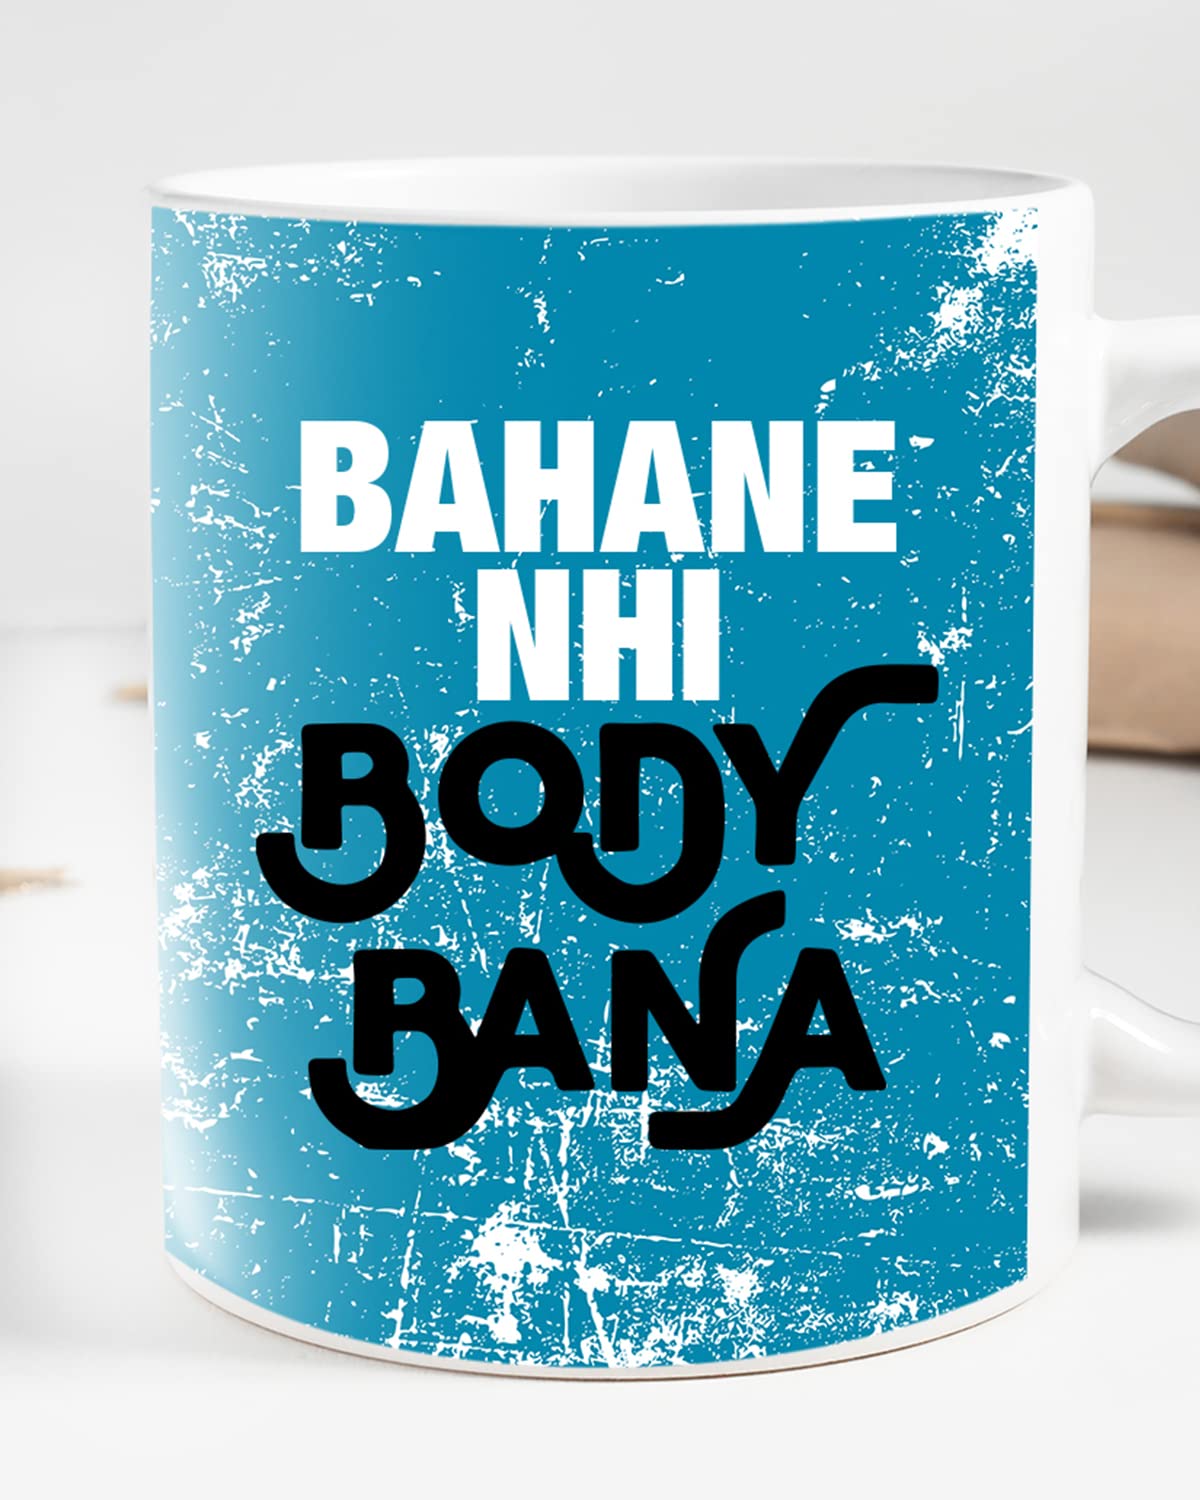 BAHANE NHI Body BANA Coffee Mug - Gift for Friend, Birthday Gift, Birthday Mug, Sarcasm Quotes Mug, Mugs with Funny & Funky Dialogues, Bollywood Mugs, Funny Mugs for Him & Her